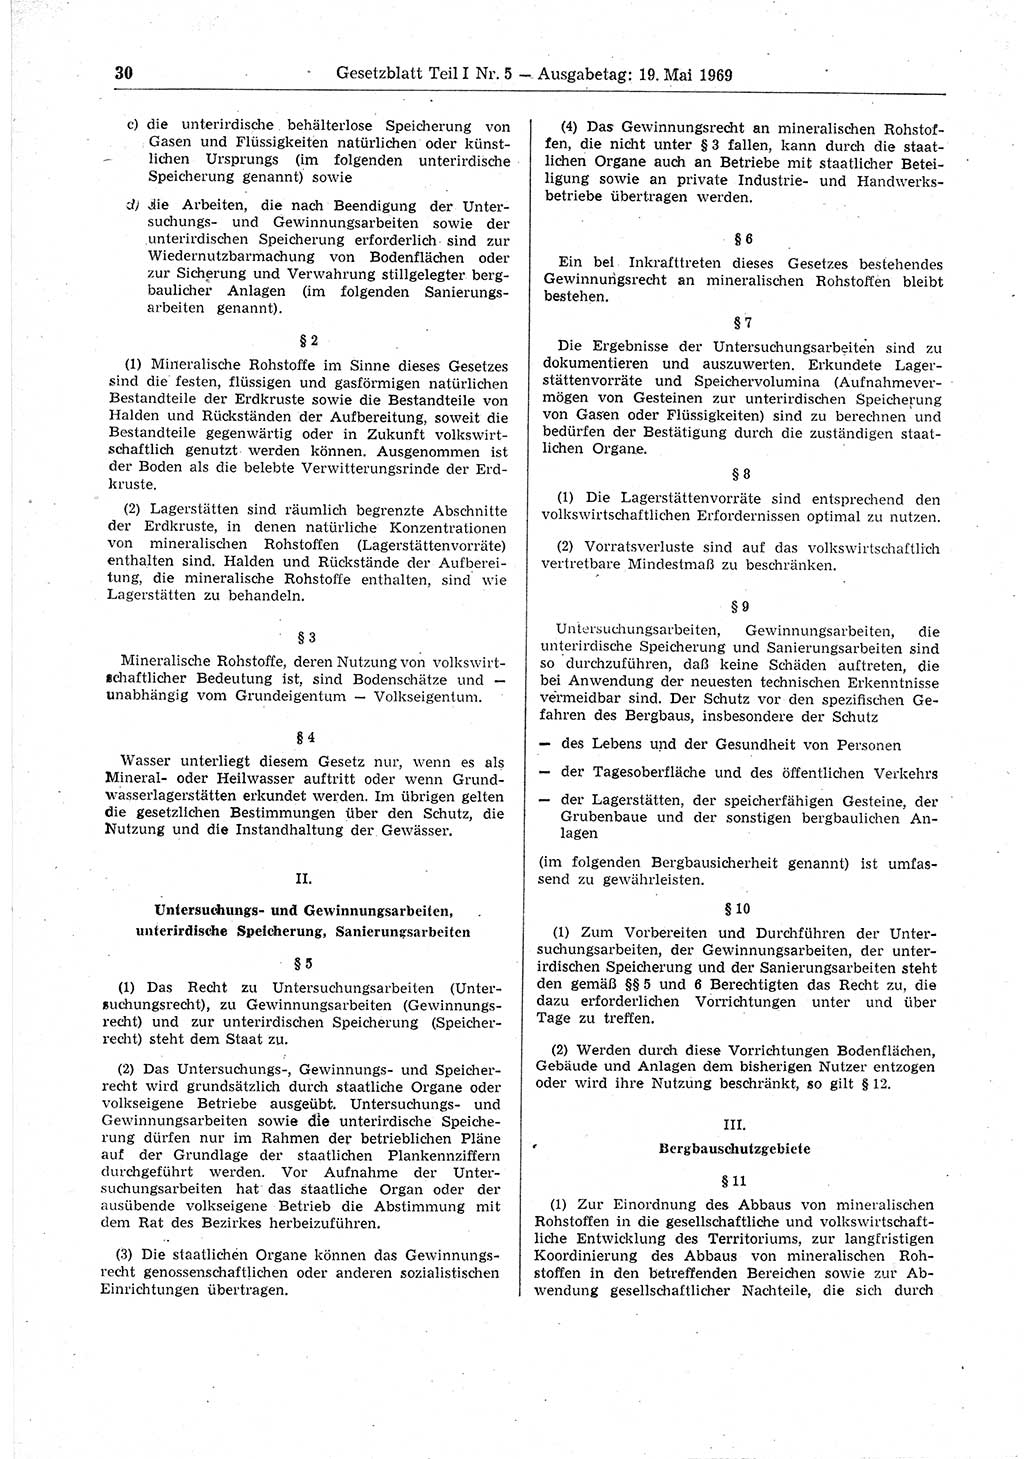 Gesetzblatt (GBl.) der Deutschen Demokratischen Republik (DDR) Teil Ⅰ 1969, Seite 30 (GBl. DDR Ⅰ 1969, S. 30)